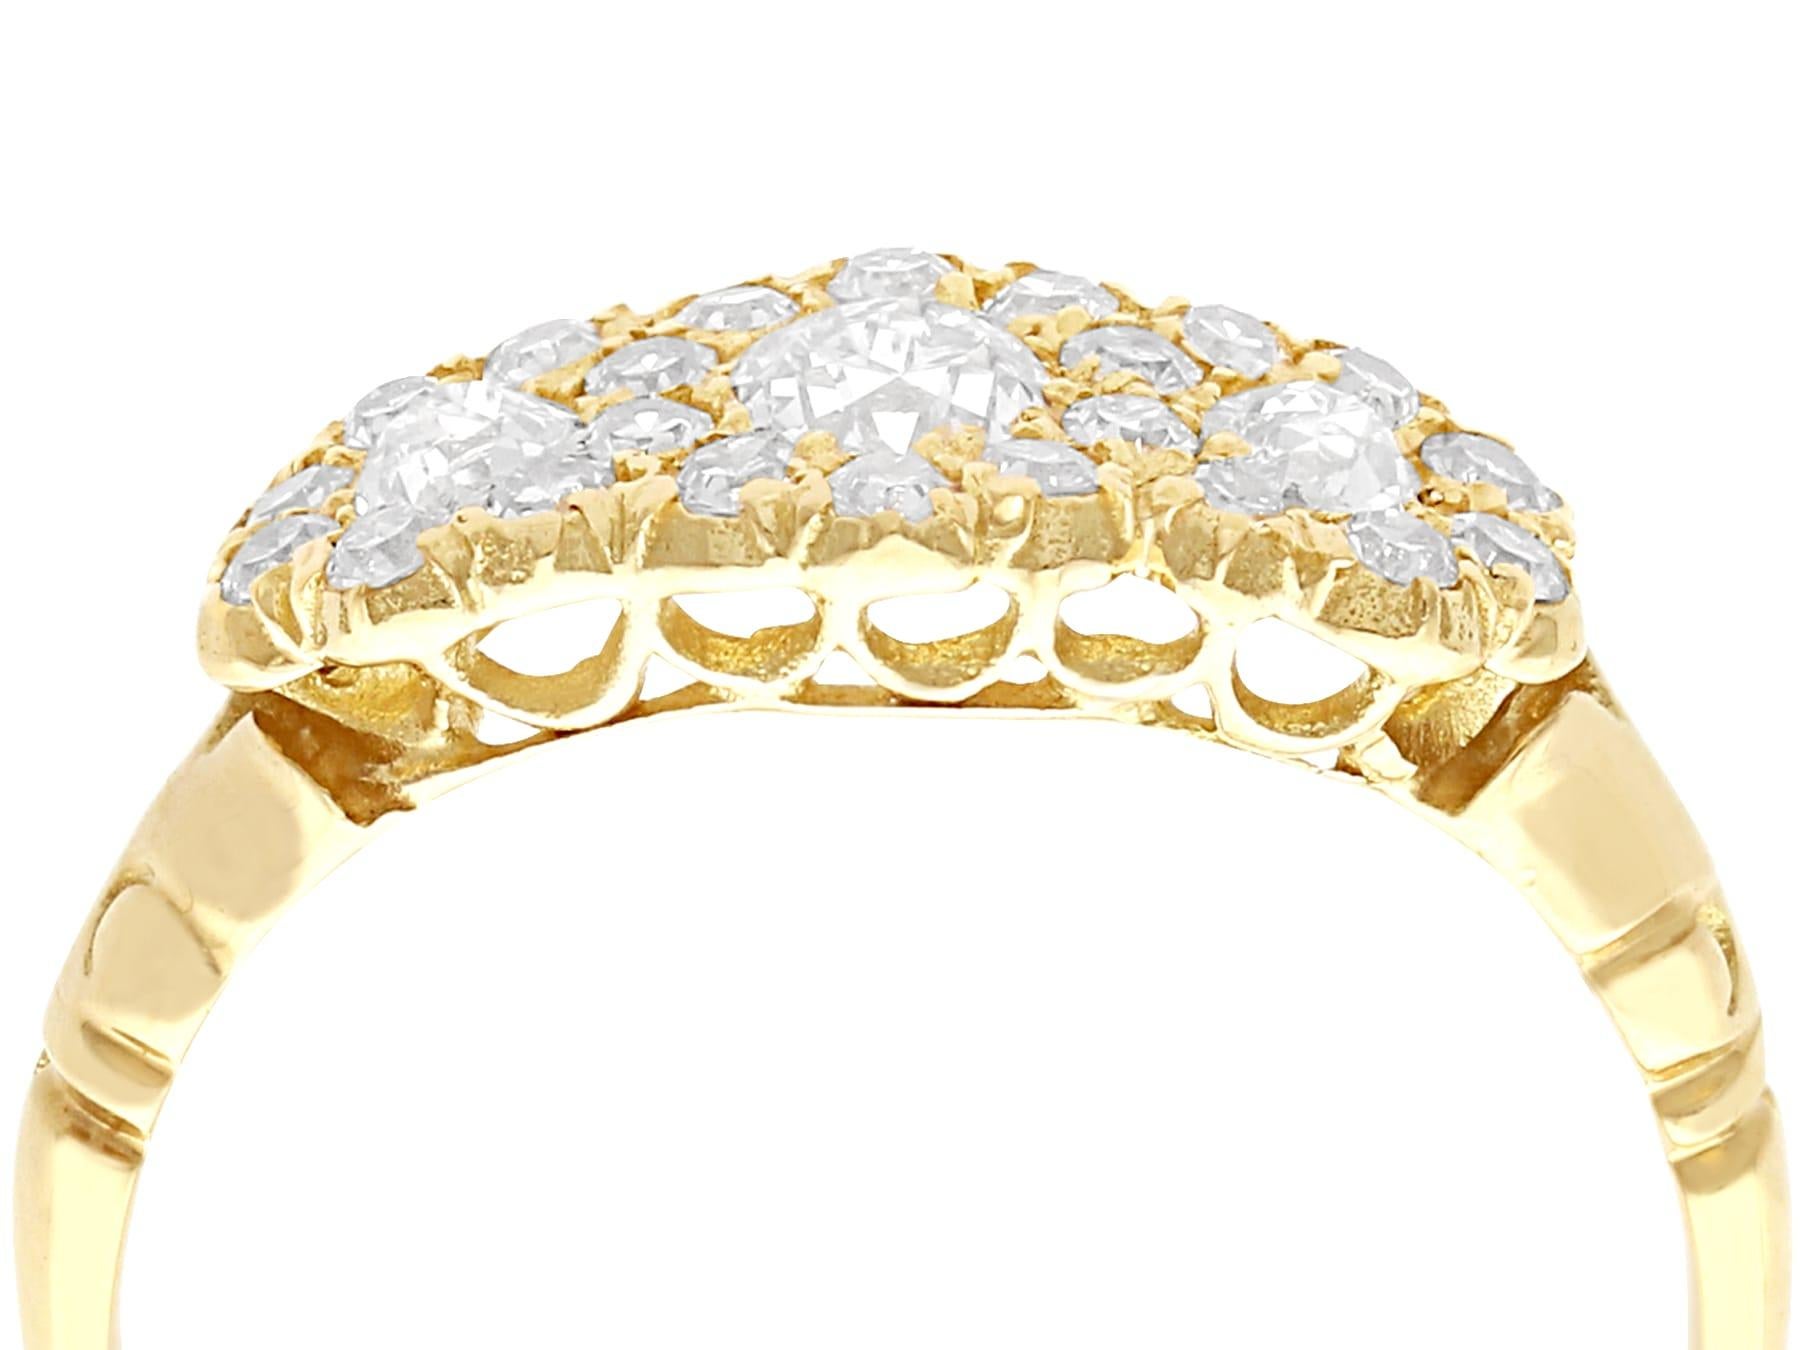 Ein feiner und beeindruckender antiker Trilogie-Cluster-Ring aus 1,01 Karat Diamanten und 18 Karat Gelbgold; Teil unserer vielfältigen Diamant-Cocktailring-Kollektionen.

Dieser beeindruckende antike Diamantring ist aus 18 Karat Gelbgold